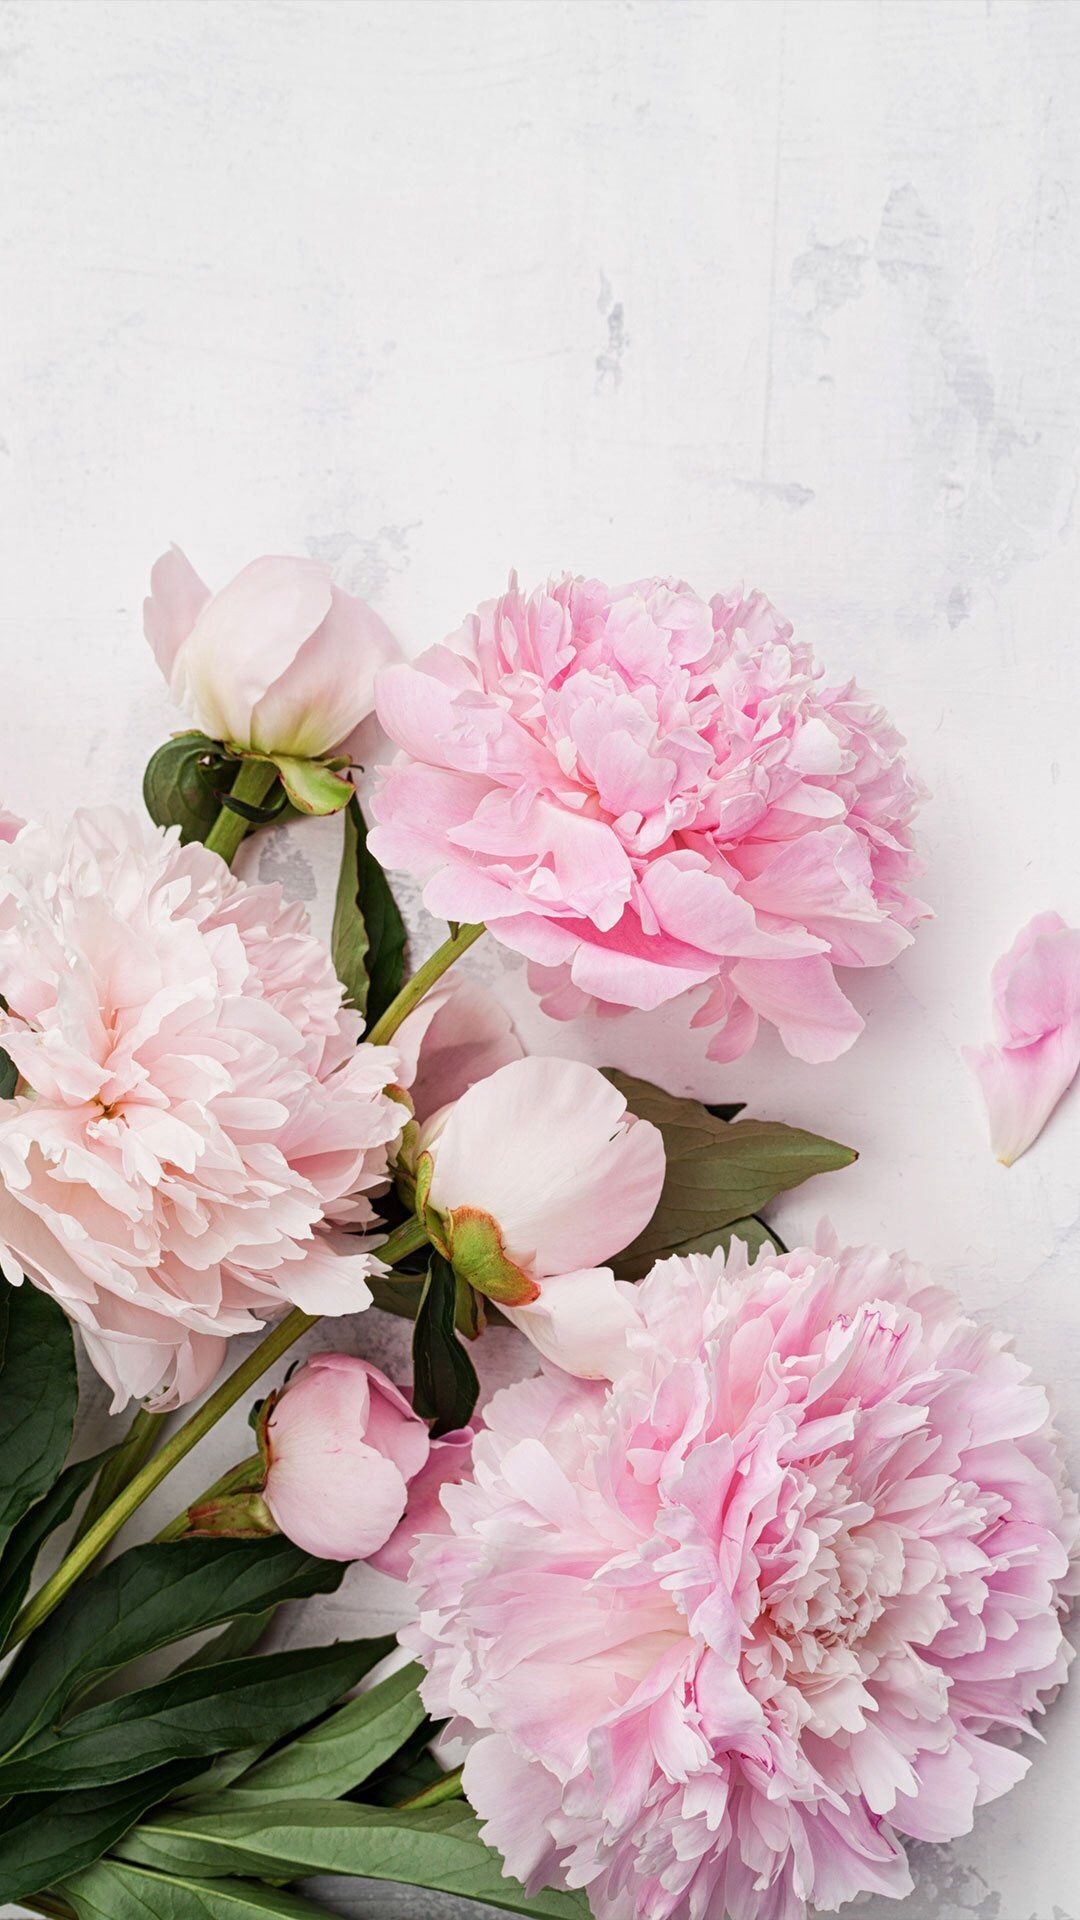 牡丹の壁紙,花,開花植物,ピンク,一般的な牡丹,花弁